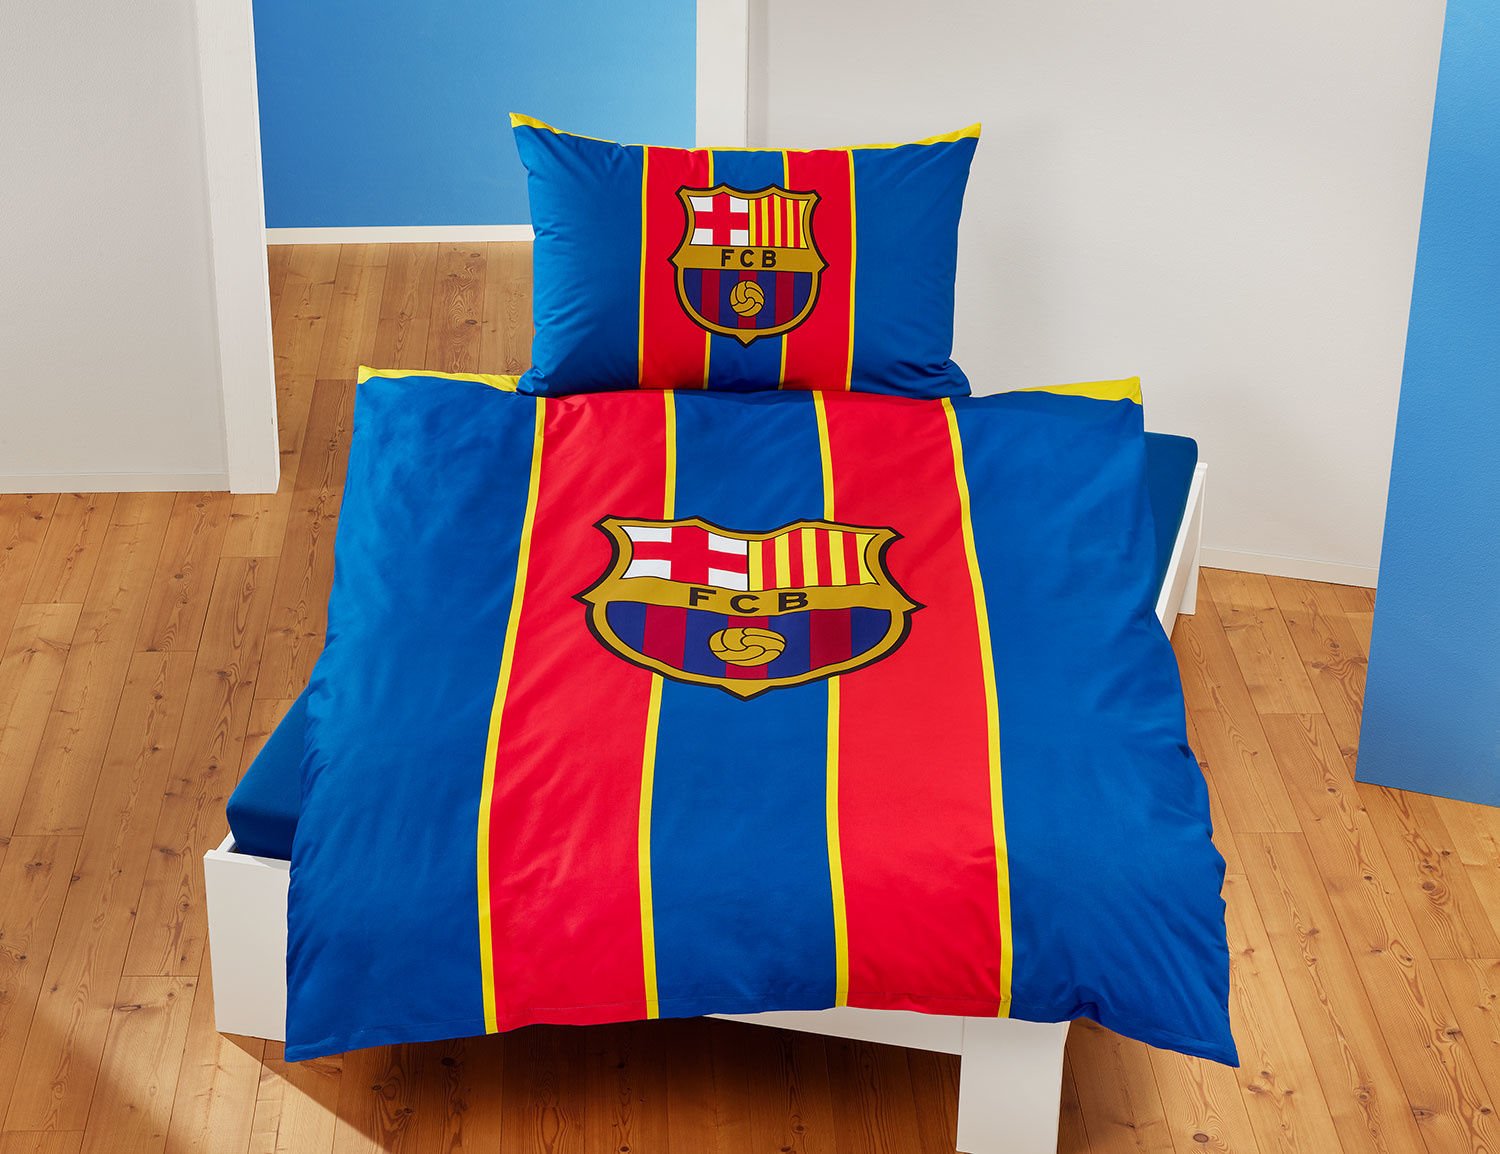 Linge de lit FC Barcelona bleu et rouge avec logo du club